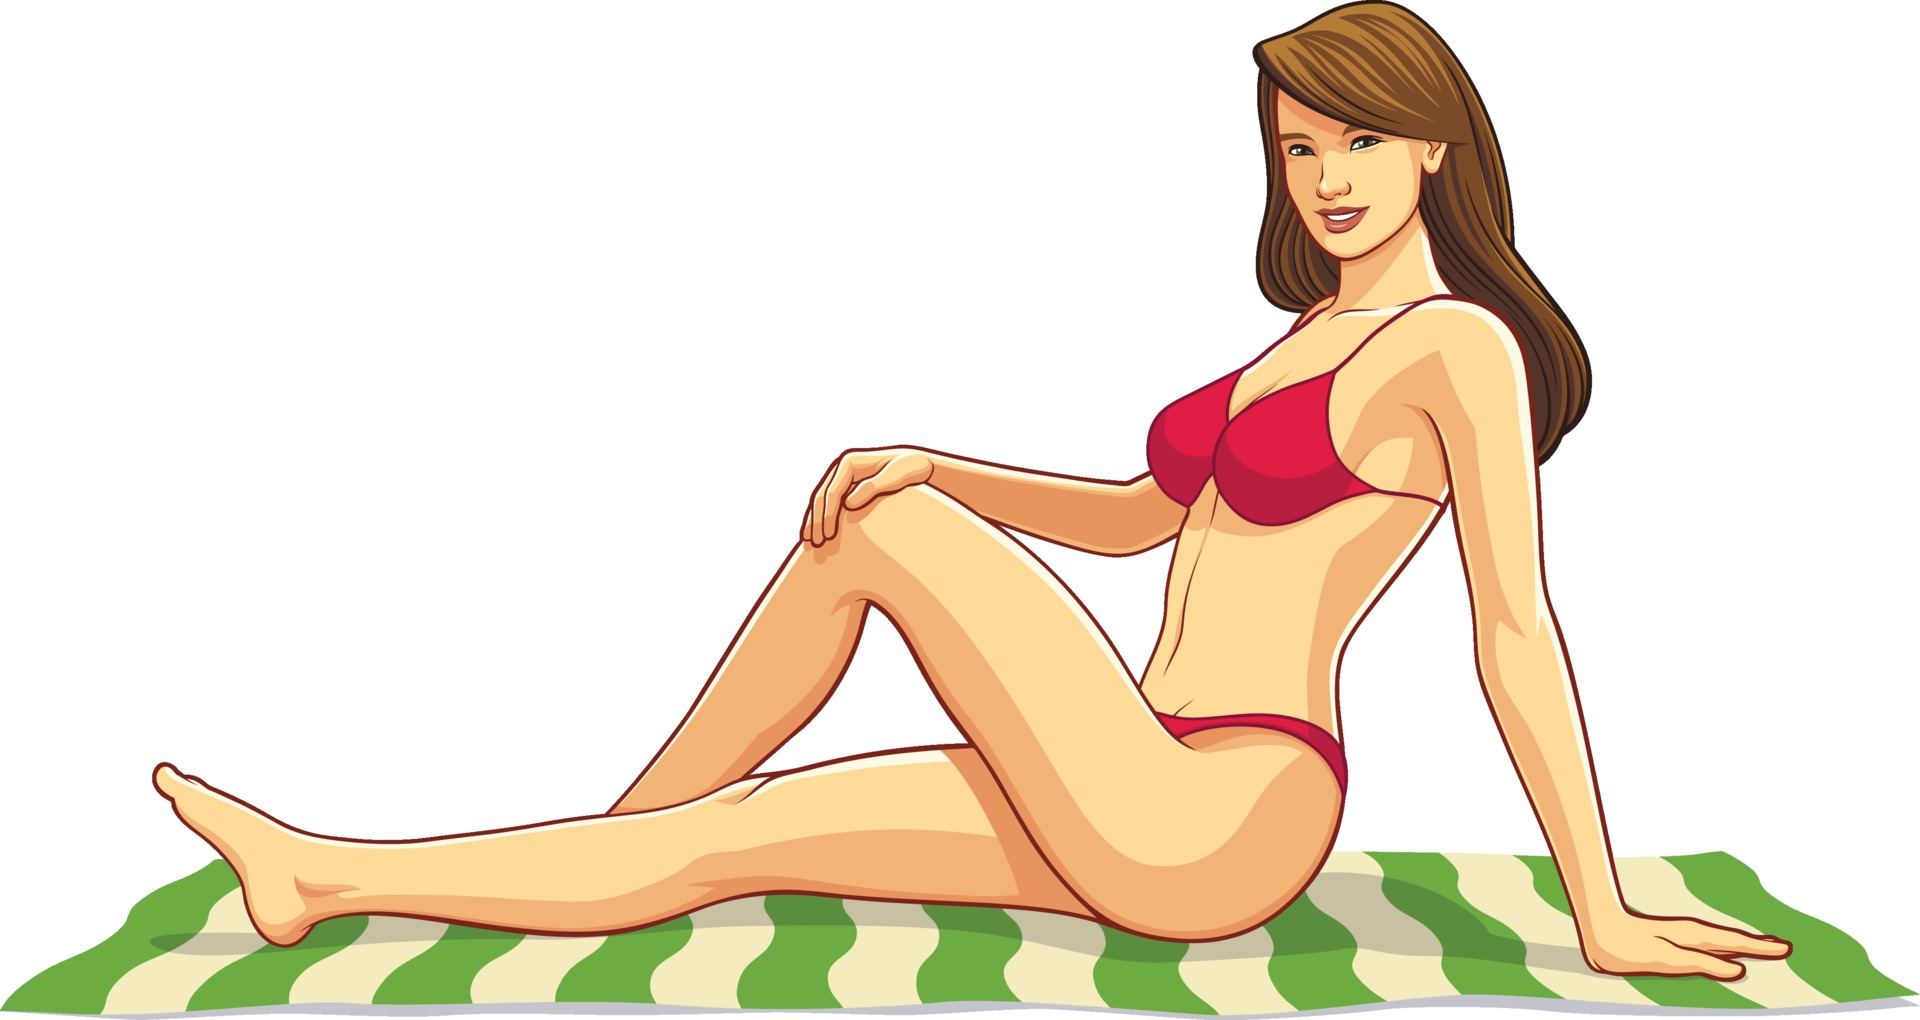 bikini flicka avkopplande på en strandhandduk 2129043 - Ladda ner gratis  vektorgrafik, arkivgrafik och bilder